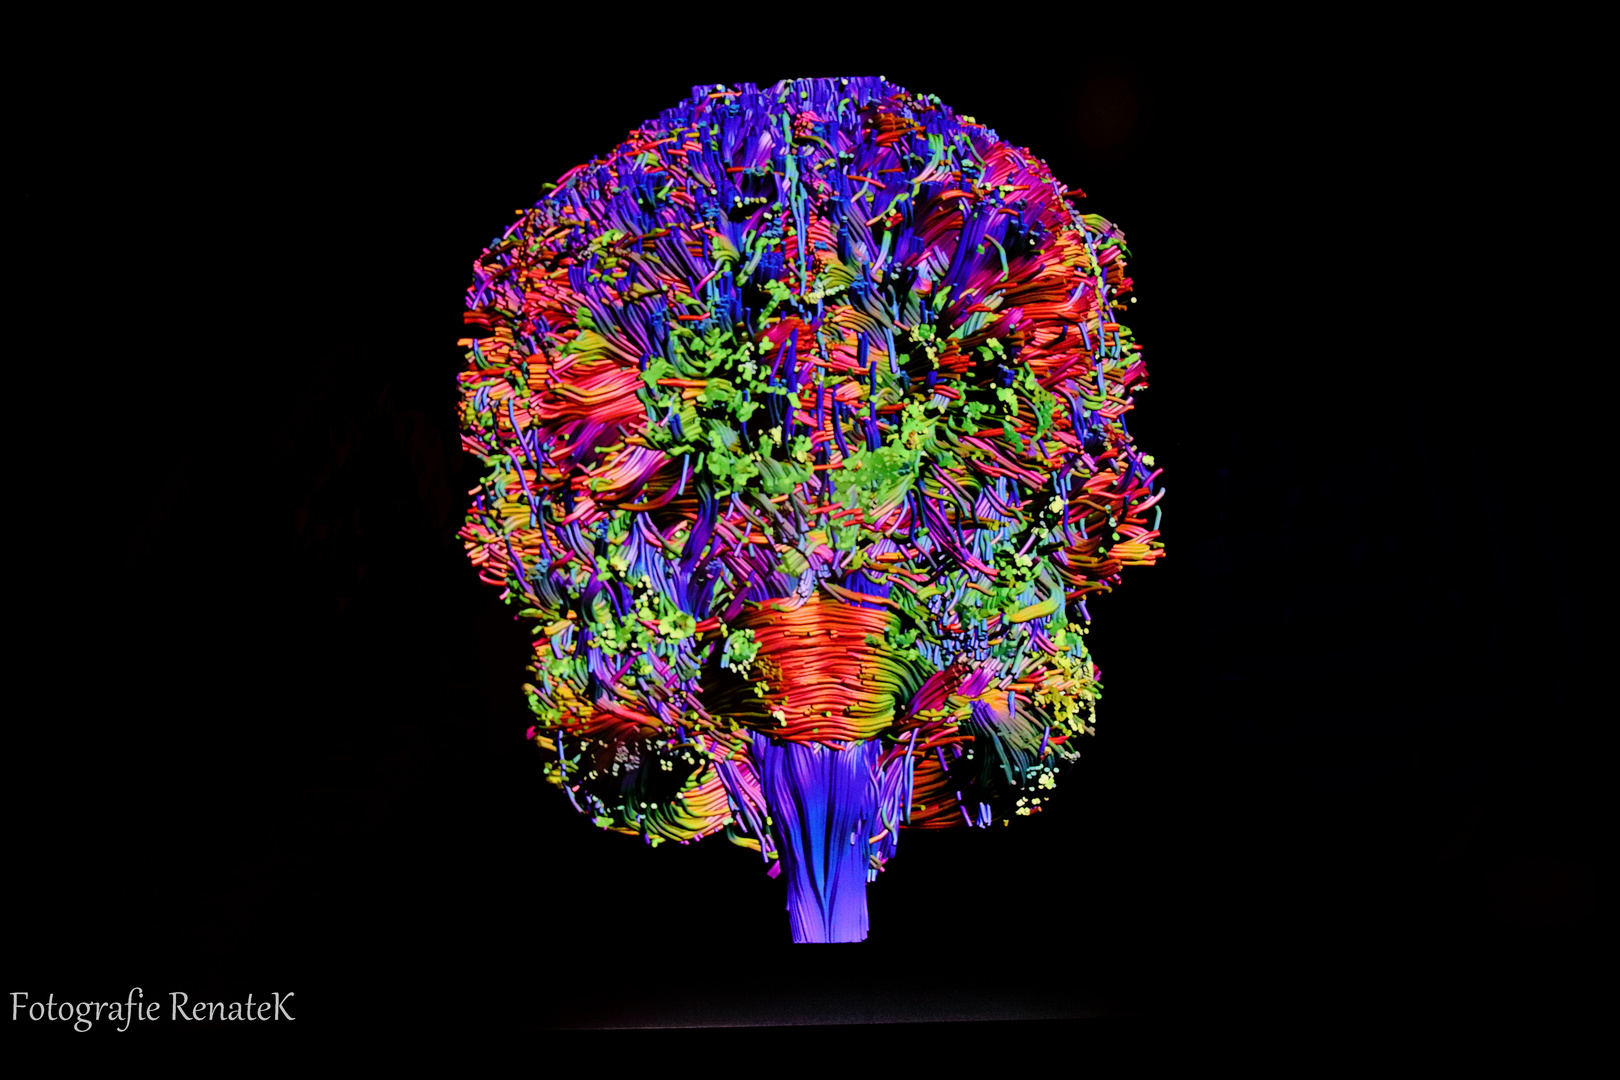 Das Nervensystem des Gehirns - Ansicht von hinten -